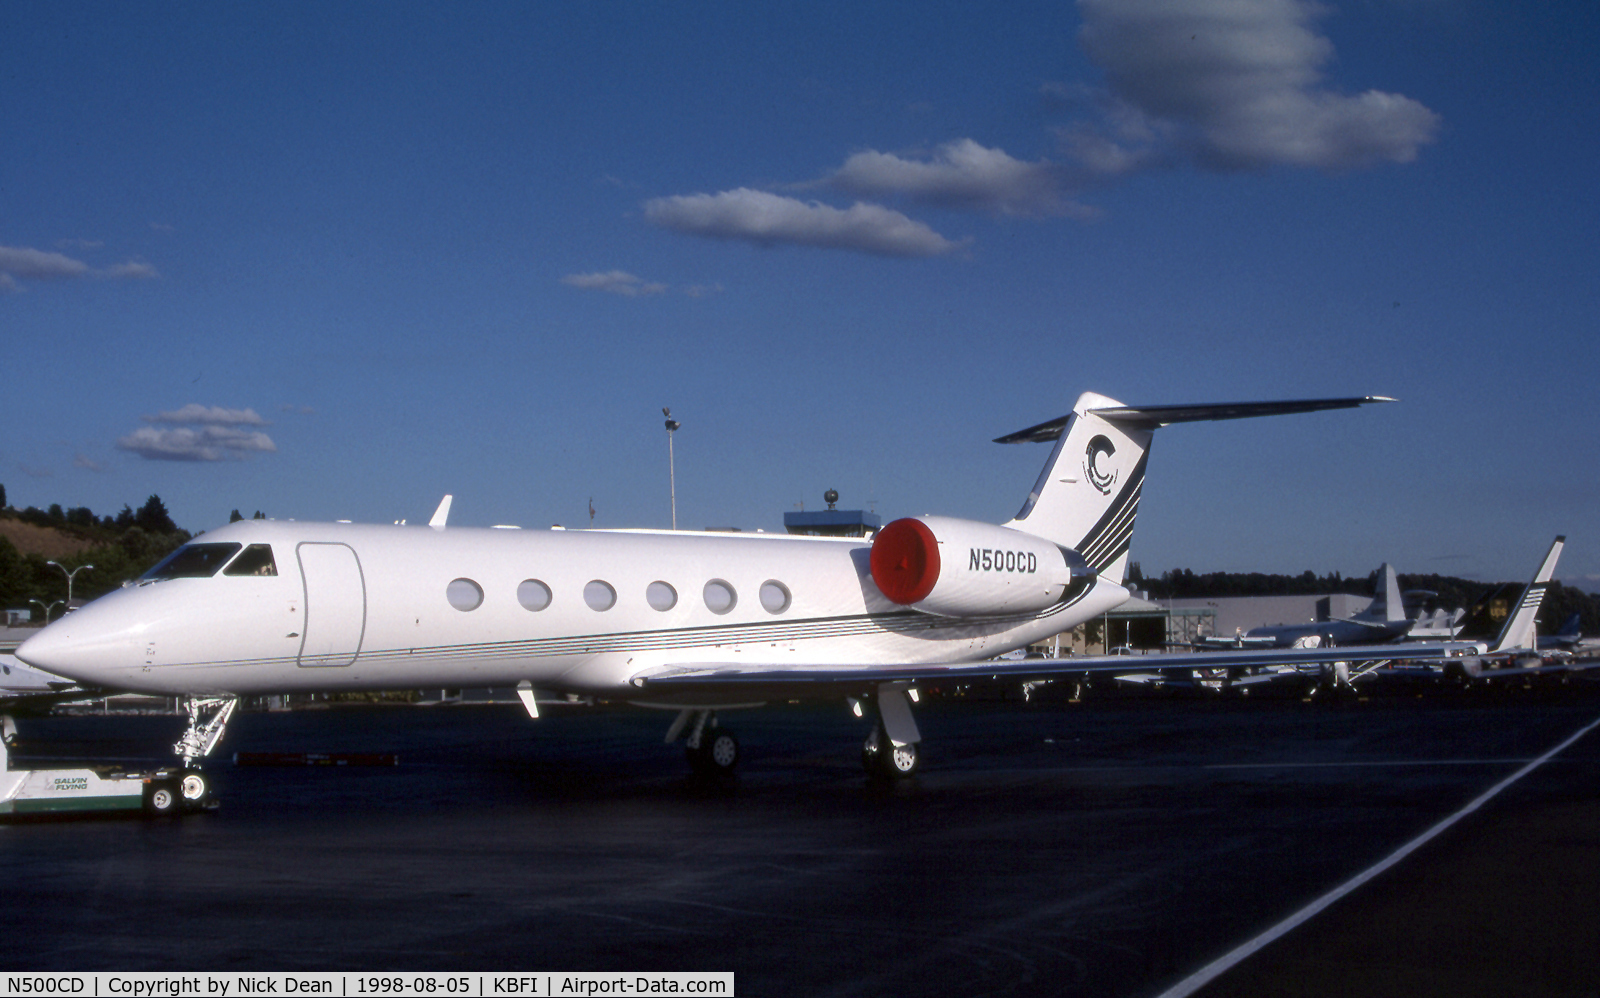 N500CD, 1997 Gulfstream Aerospace Gulfstream IVSP C/N 1321, KBFI